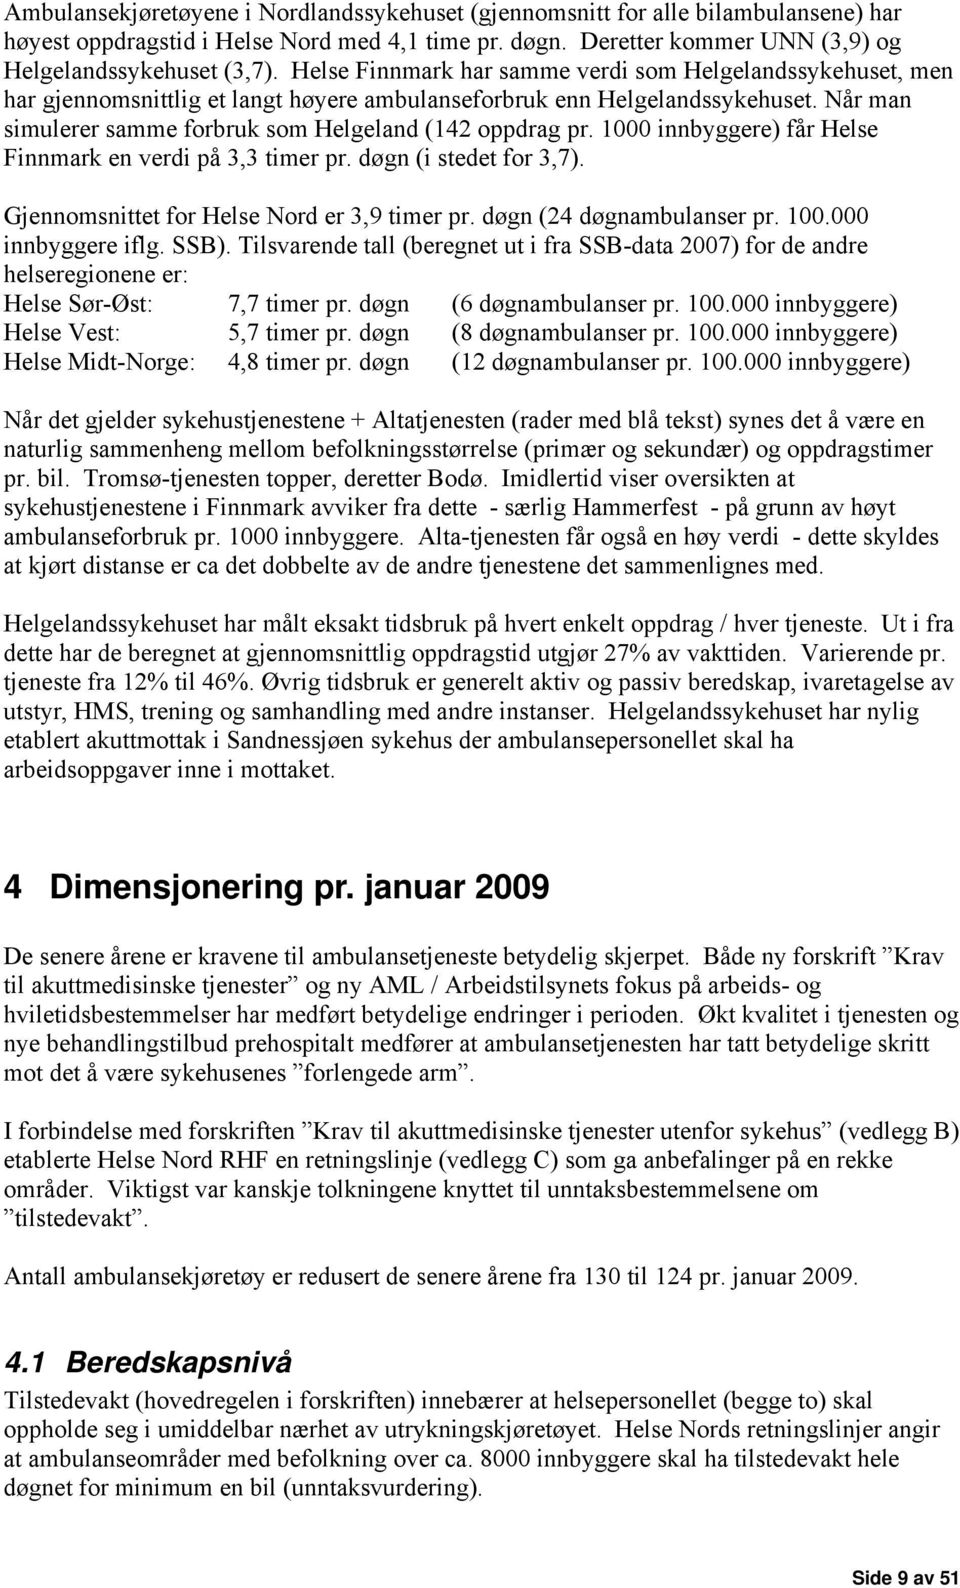 1000 innbyggere) får Helse Finnmark en verdi på 3,3 timer pr. døgn (i stedet for 3,7). Gjennomsnittet for Helse Nord er 3,9 timer pr. døgn (24 døgnambulanser pr. 100.000 innbyggere iflg. SSB).